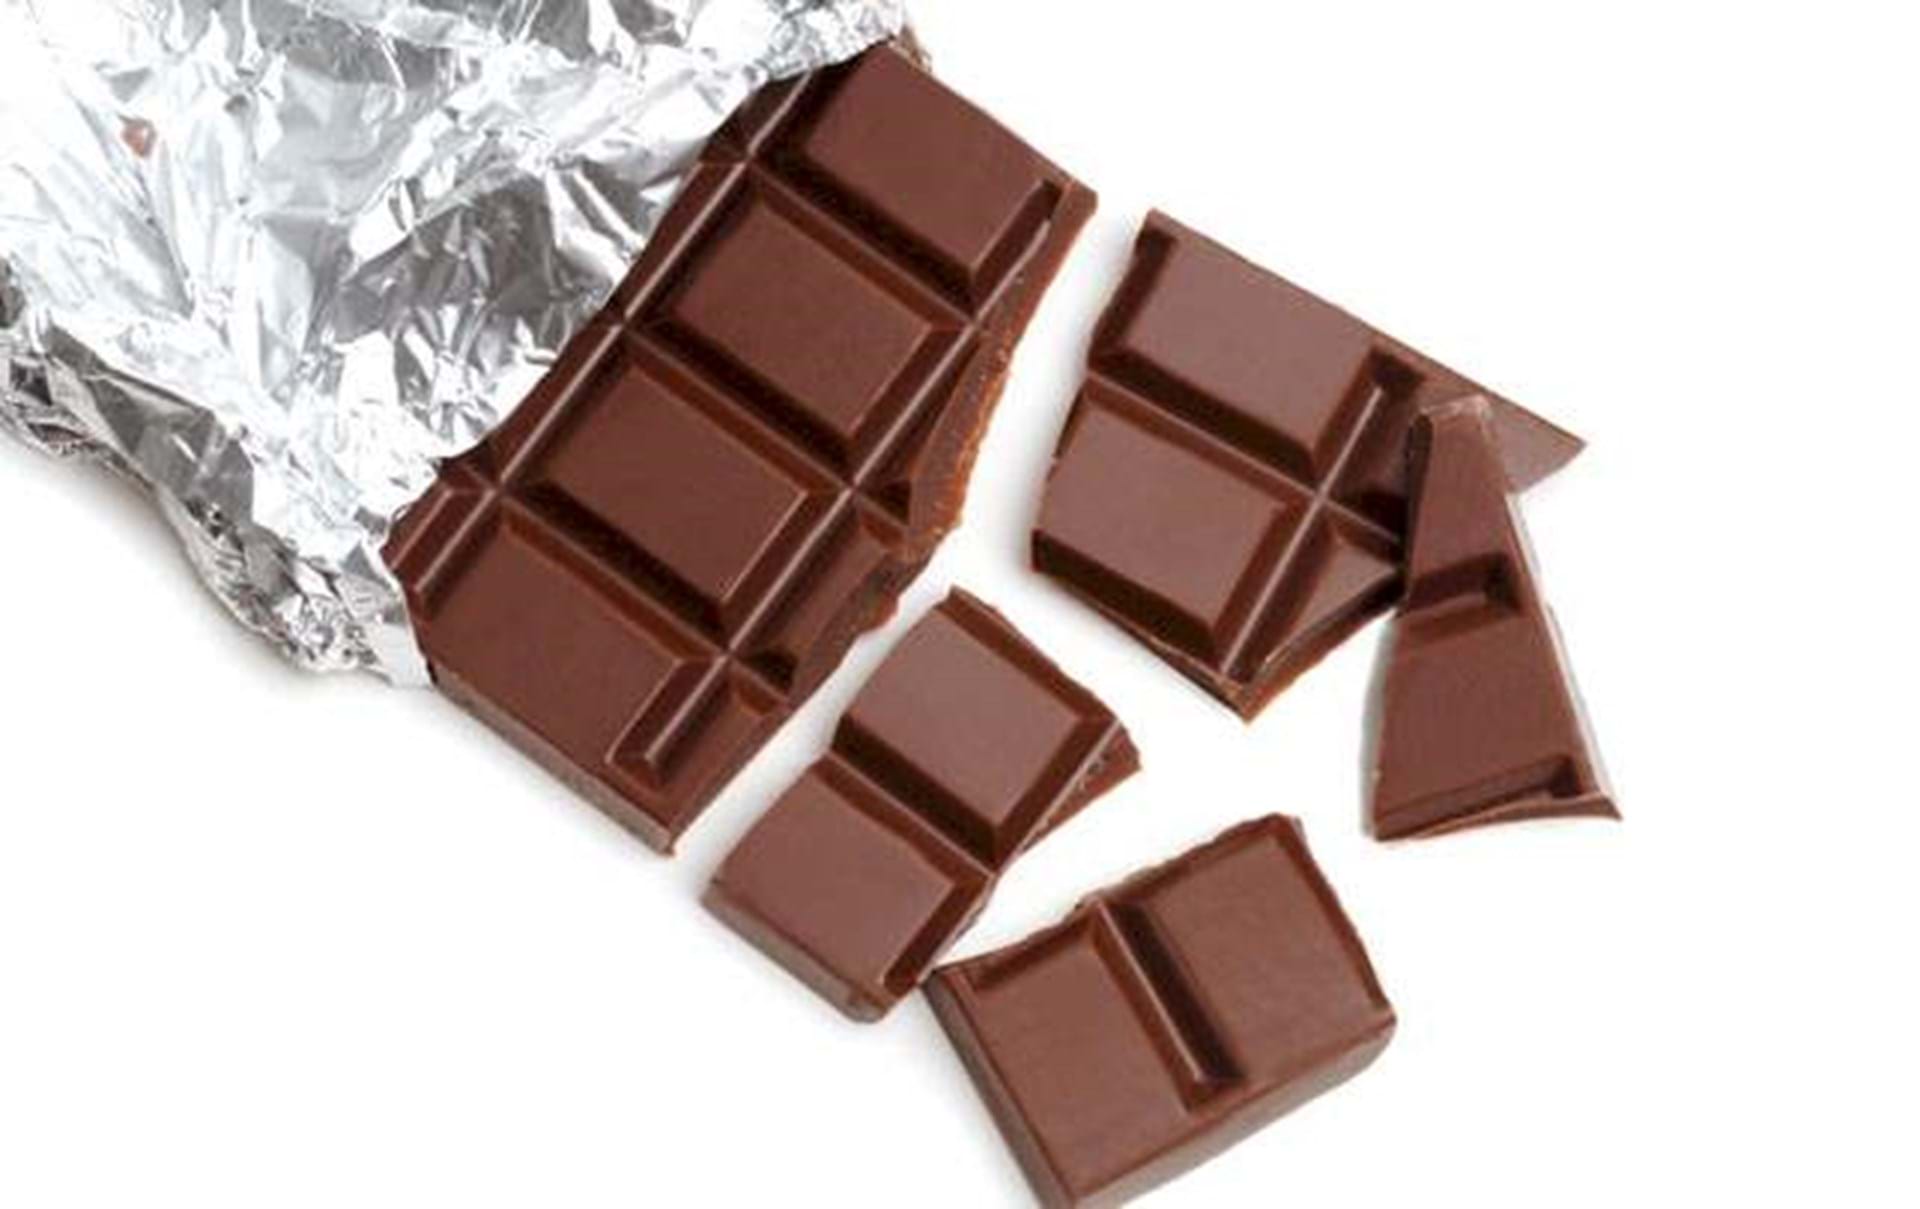 mørk chokolade - ALT.dk